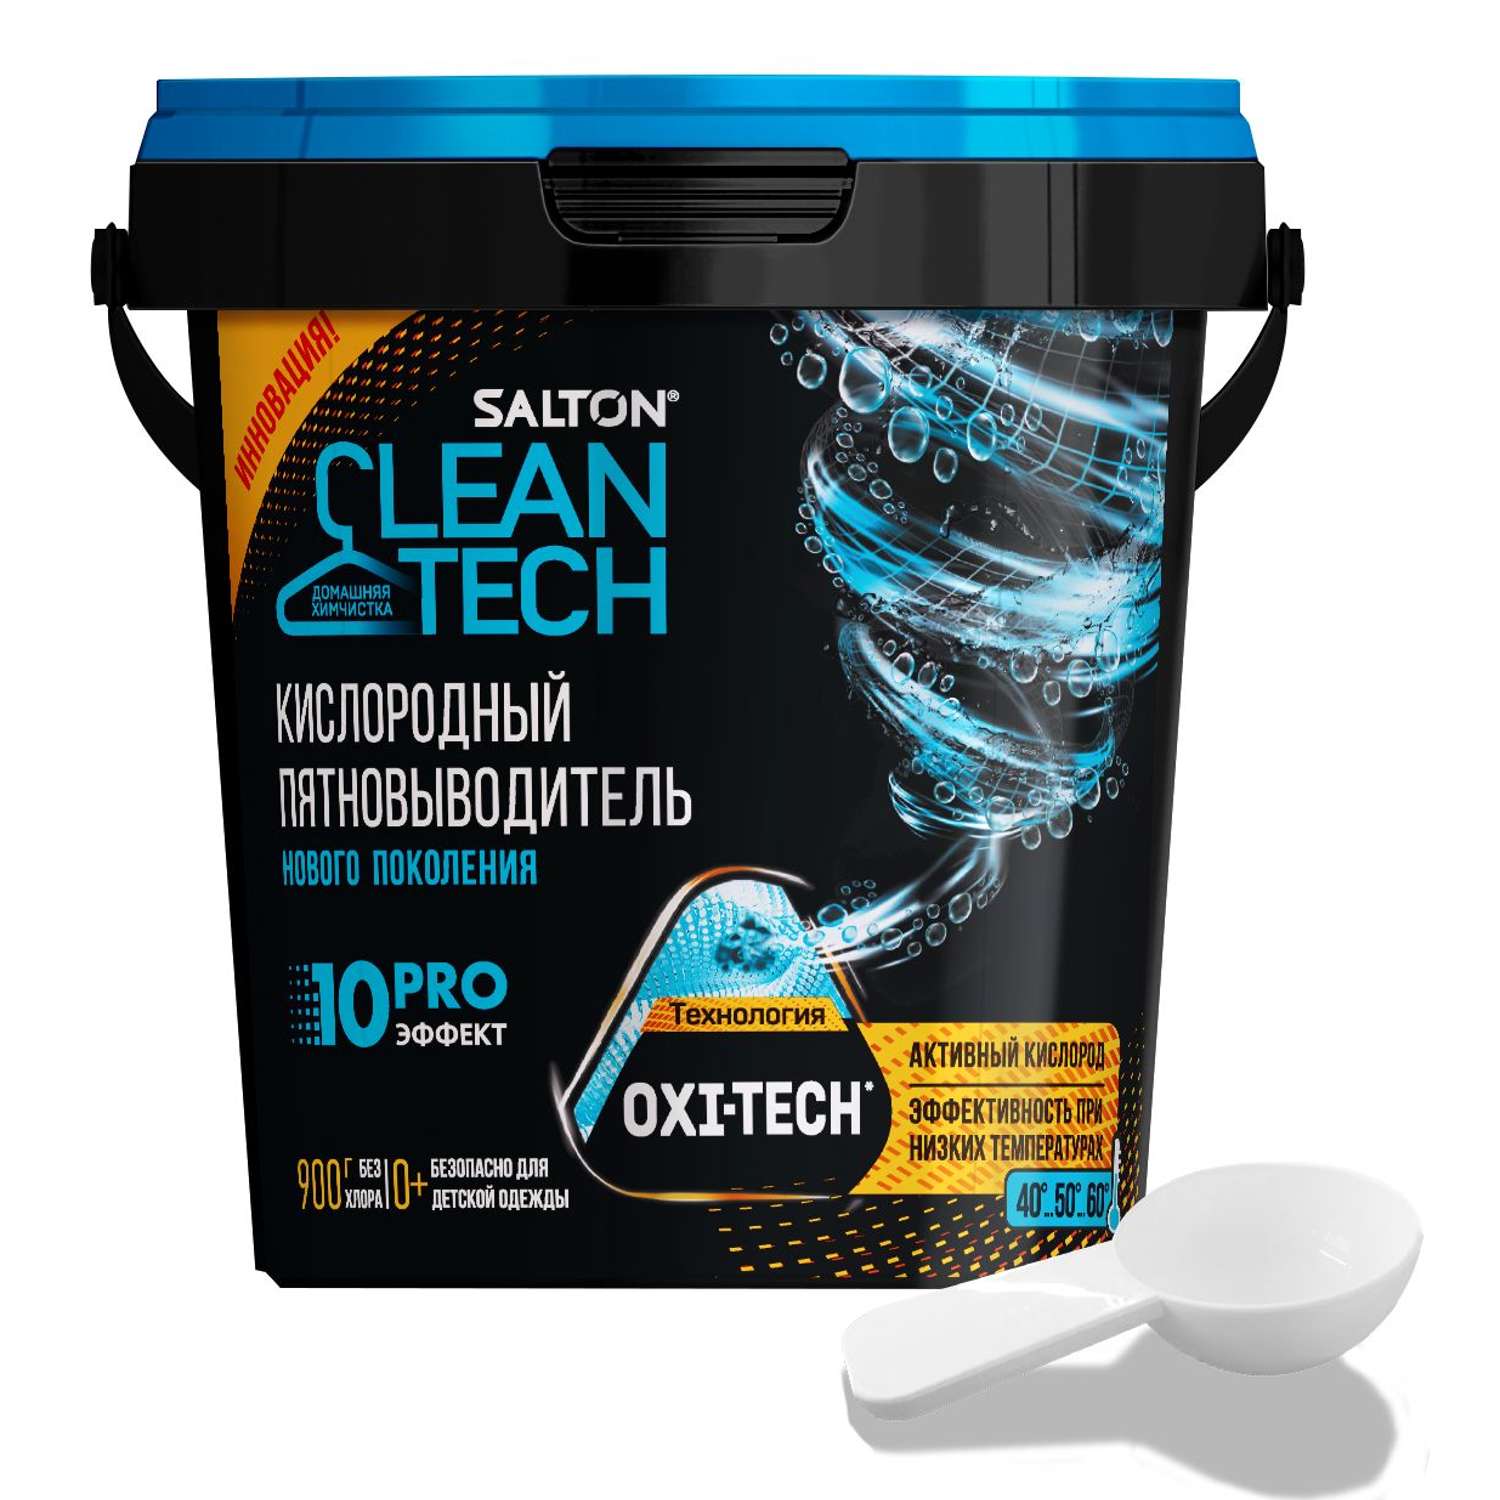 Кислородный пятновыводитель Salton Cleantech 900гр - фото 1